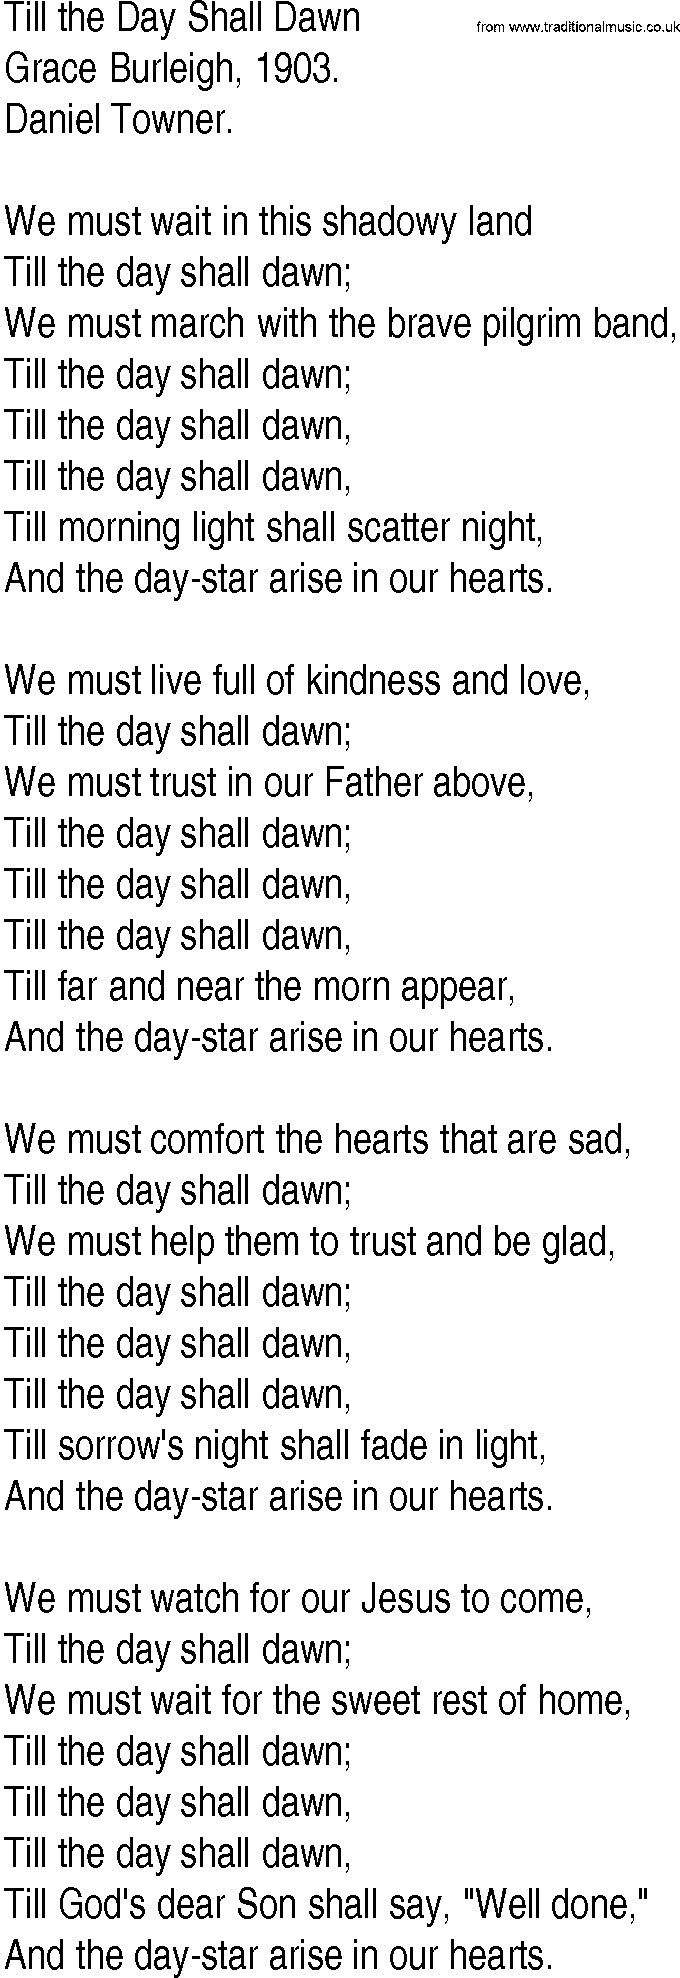 Hymn and Gospel Song: Till the Day Shall Dawn by Grace Burleigh lyrics